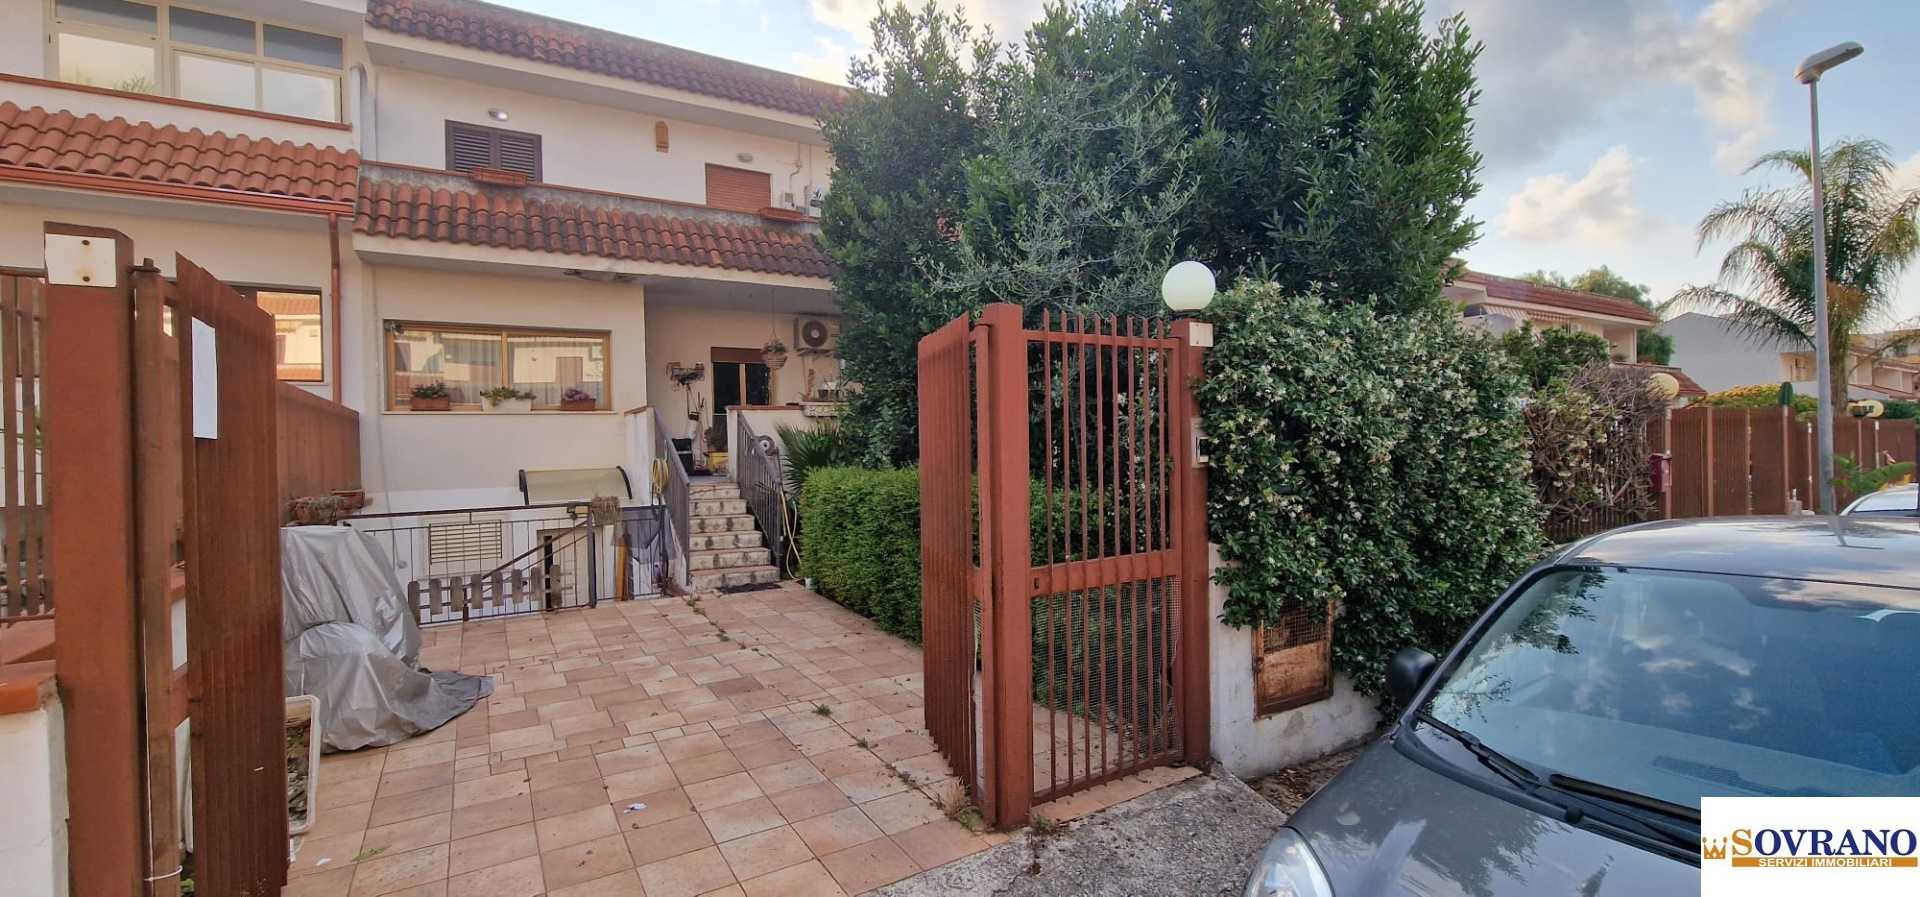 Villa in Vendita a Carini Via Salvo D'Acquisto